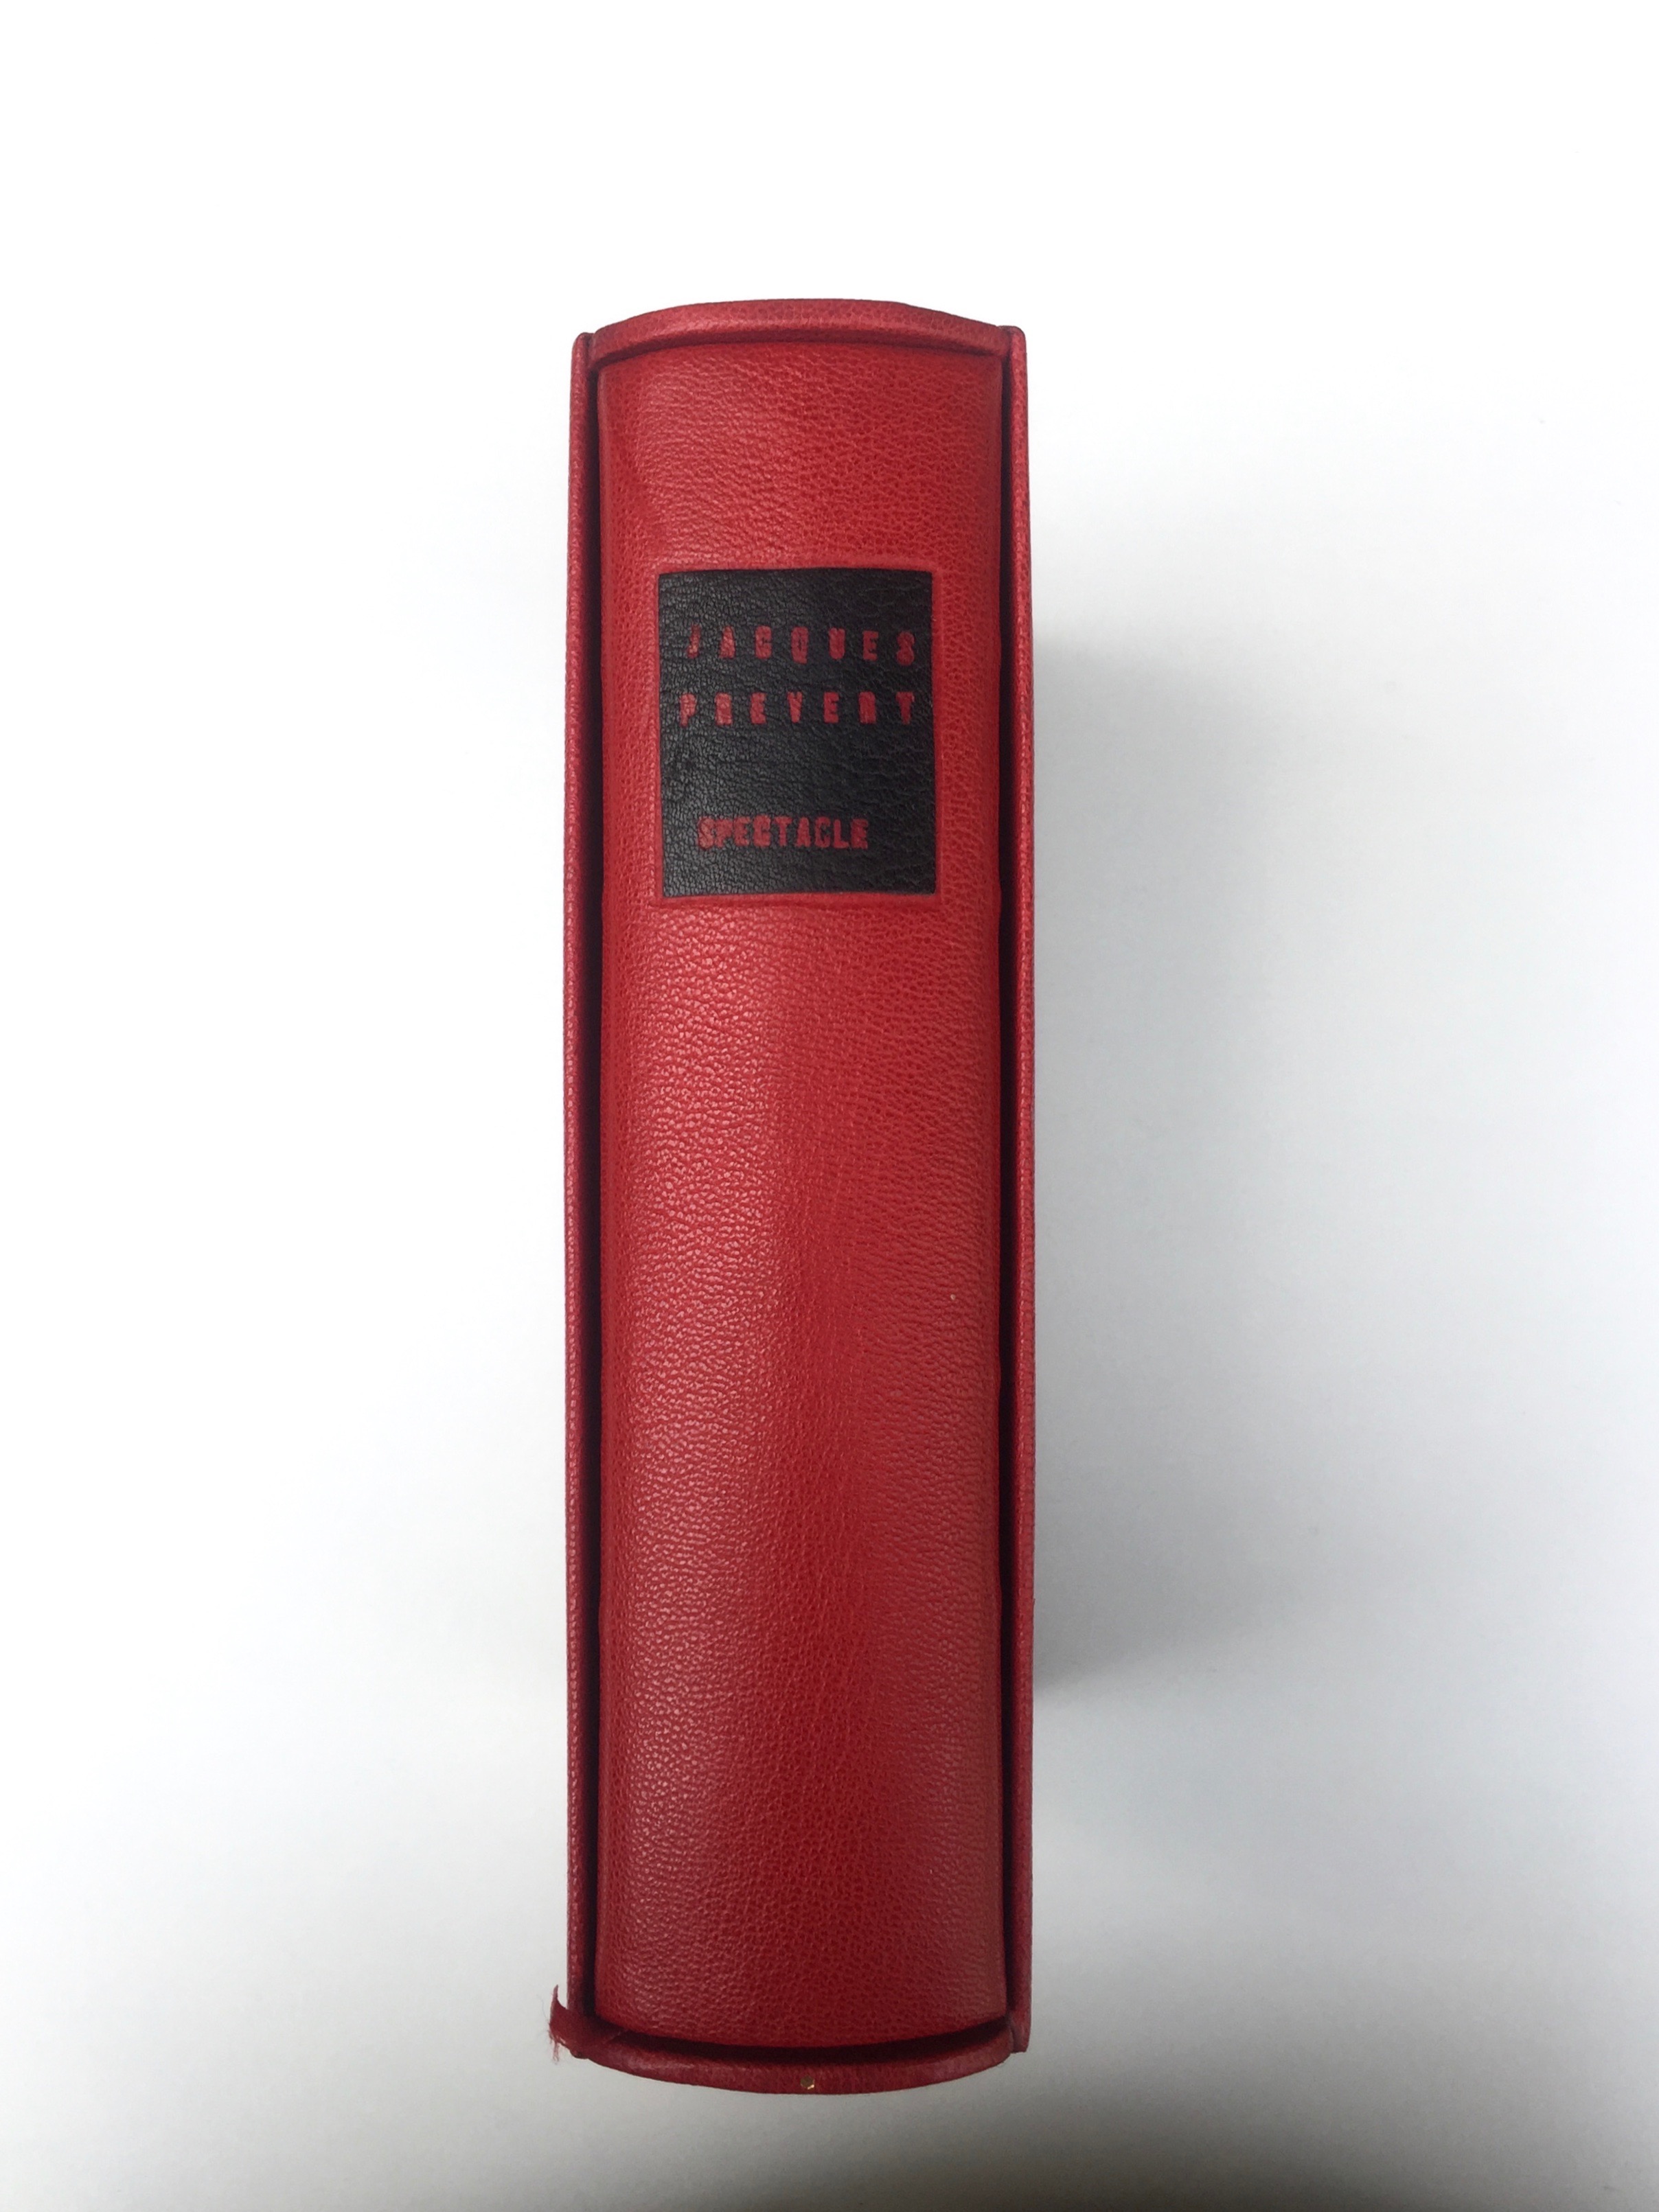 Plein cuir rouge, mosaïques noires évidéées représentant à l'identique le titrage du livre, tranchefile chapiteau bicolore rouge et noire, plats en cuir noir, charnieres en cuir, étui.